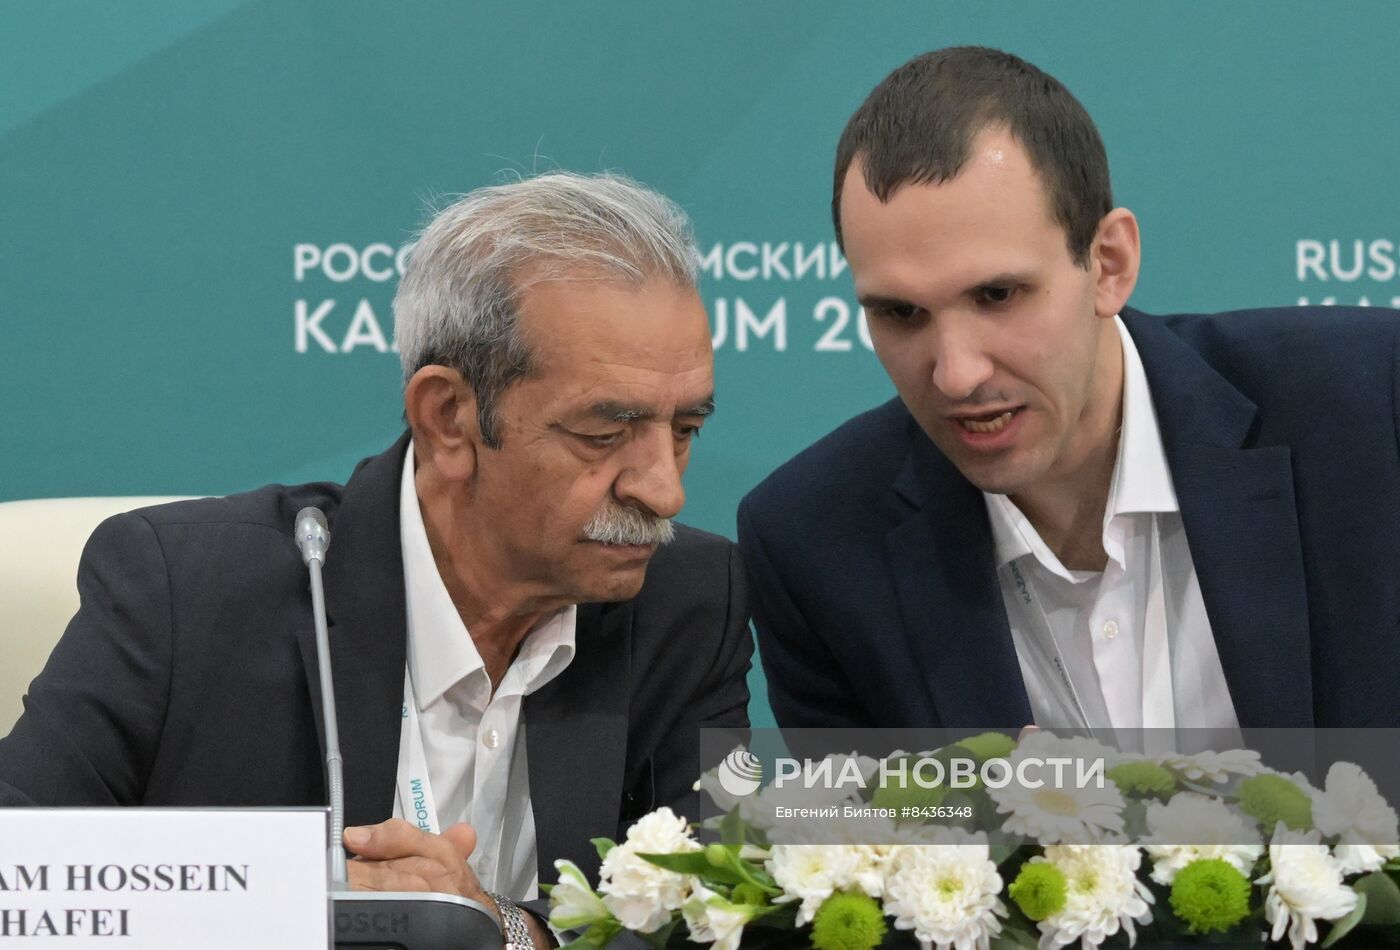 KAZANFORUM 2023. Пресс-конференция перед сессией "Бизнес-диалог: Россия - Иран"